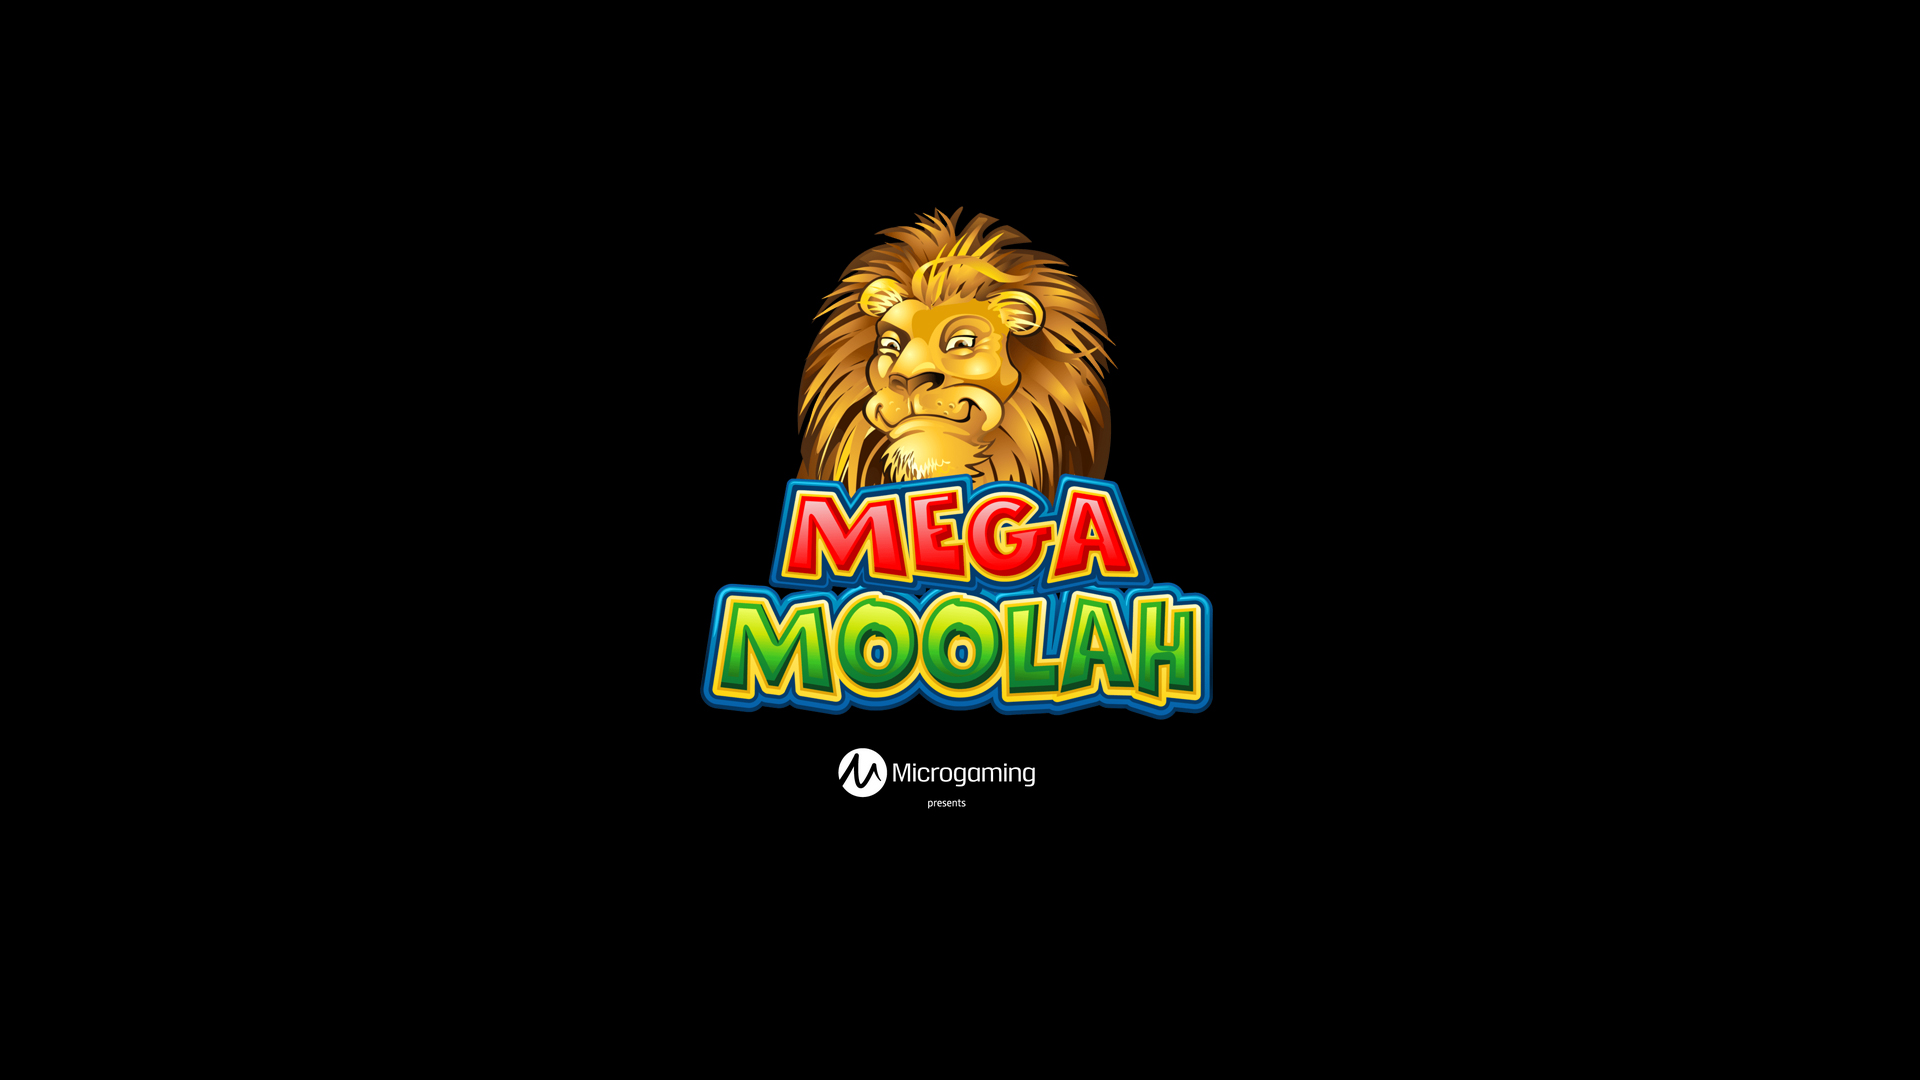 Mega Moolah slot logo.